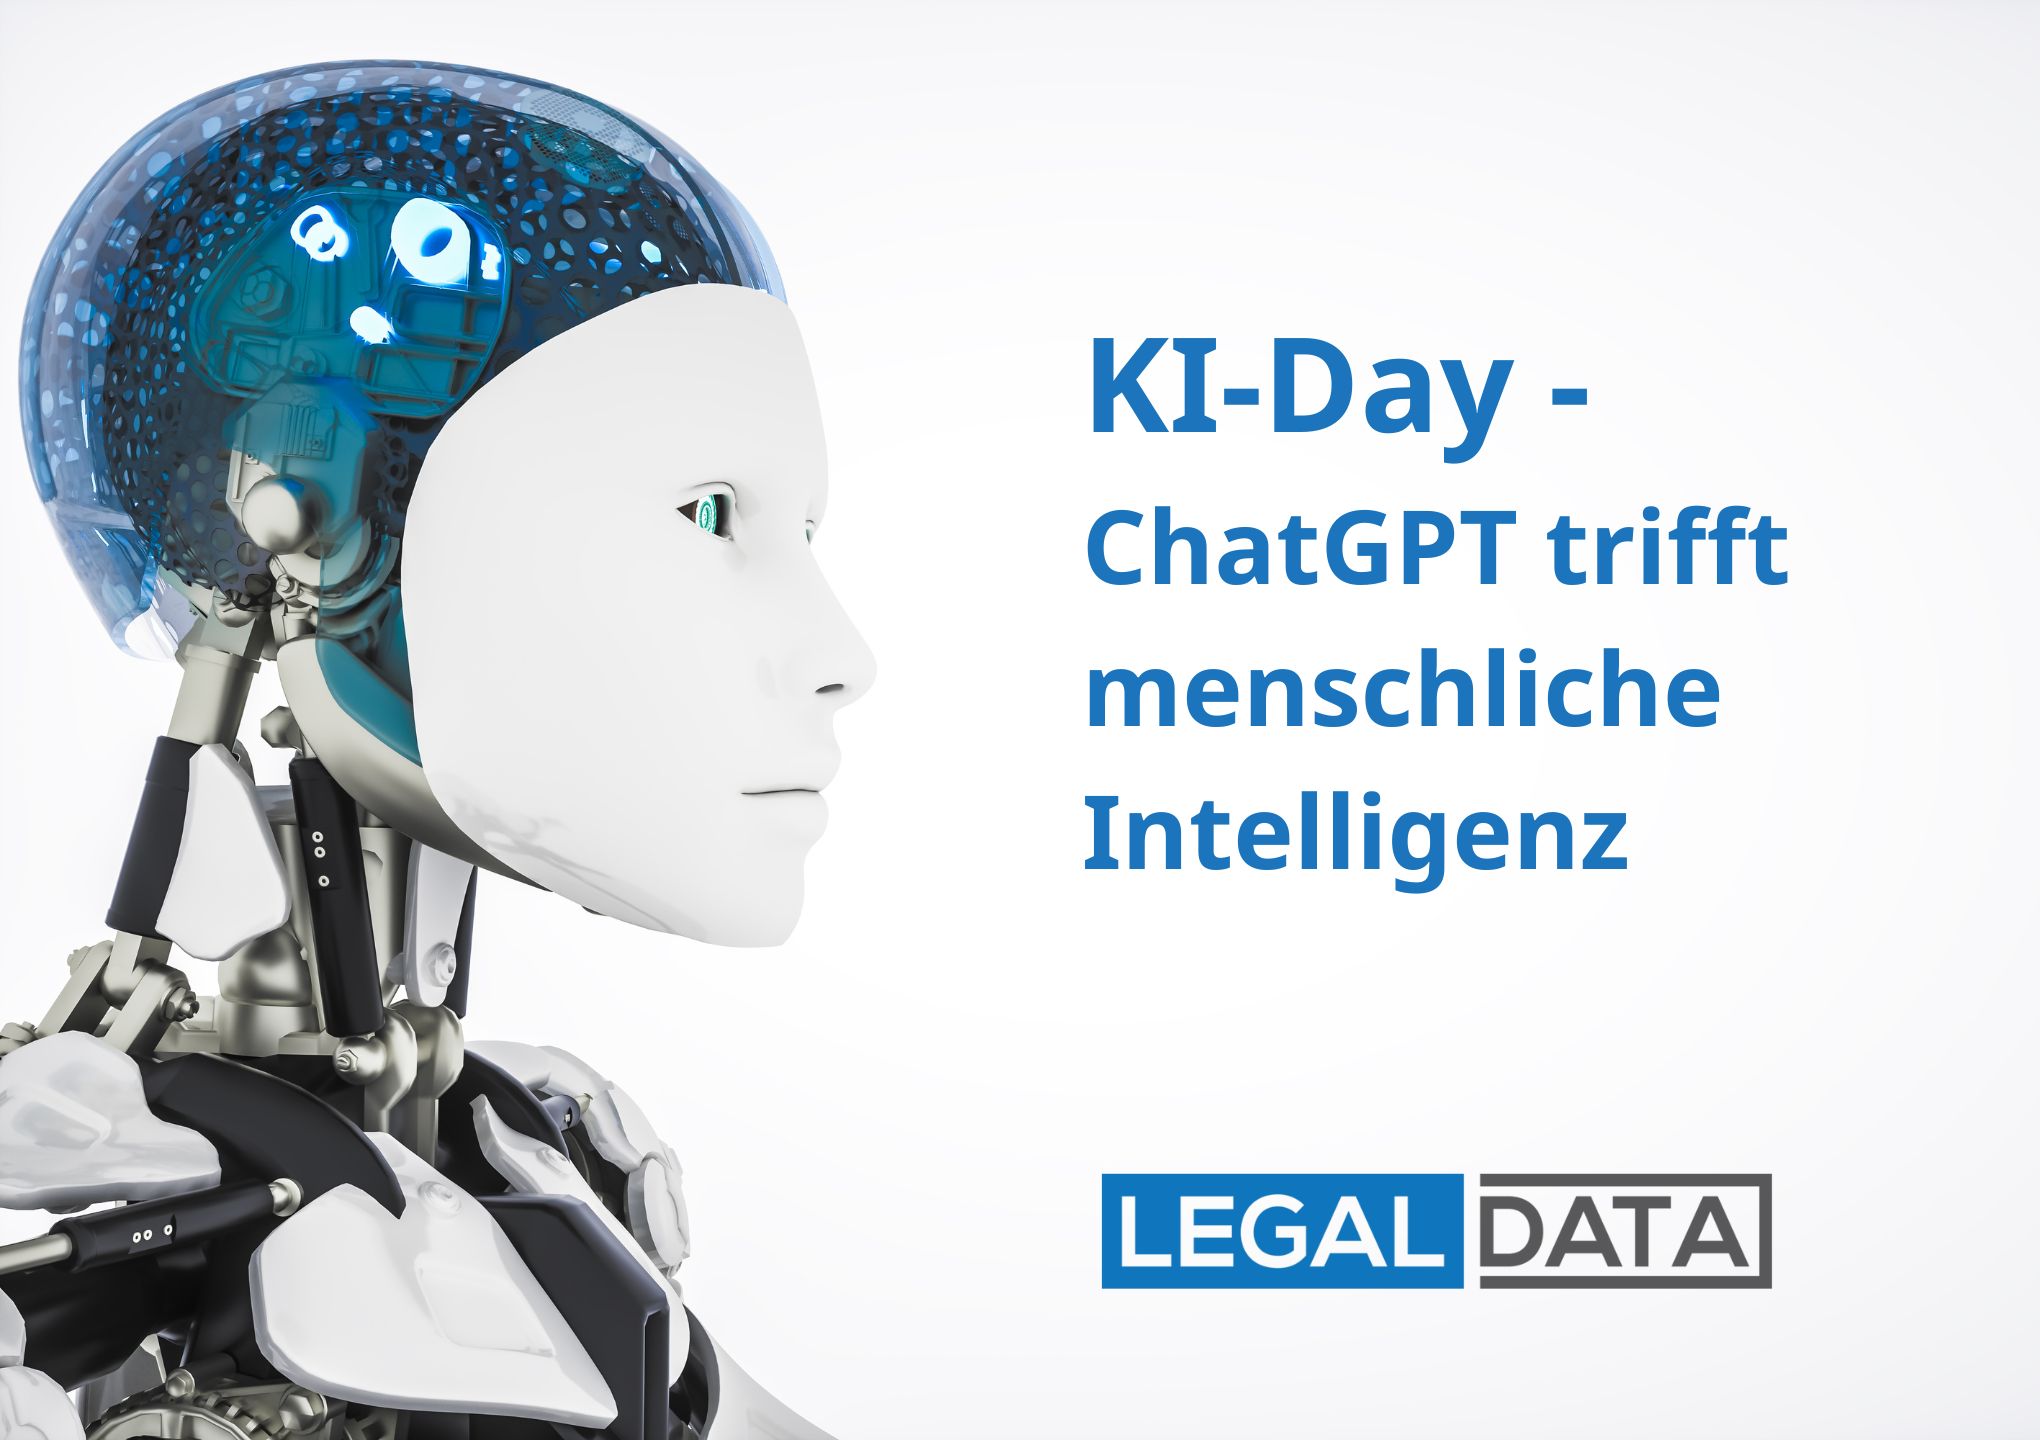 legal data KI-Day